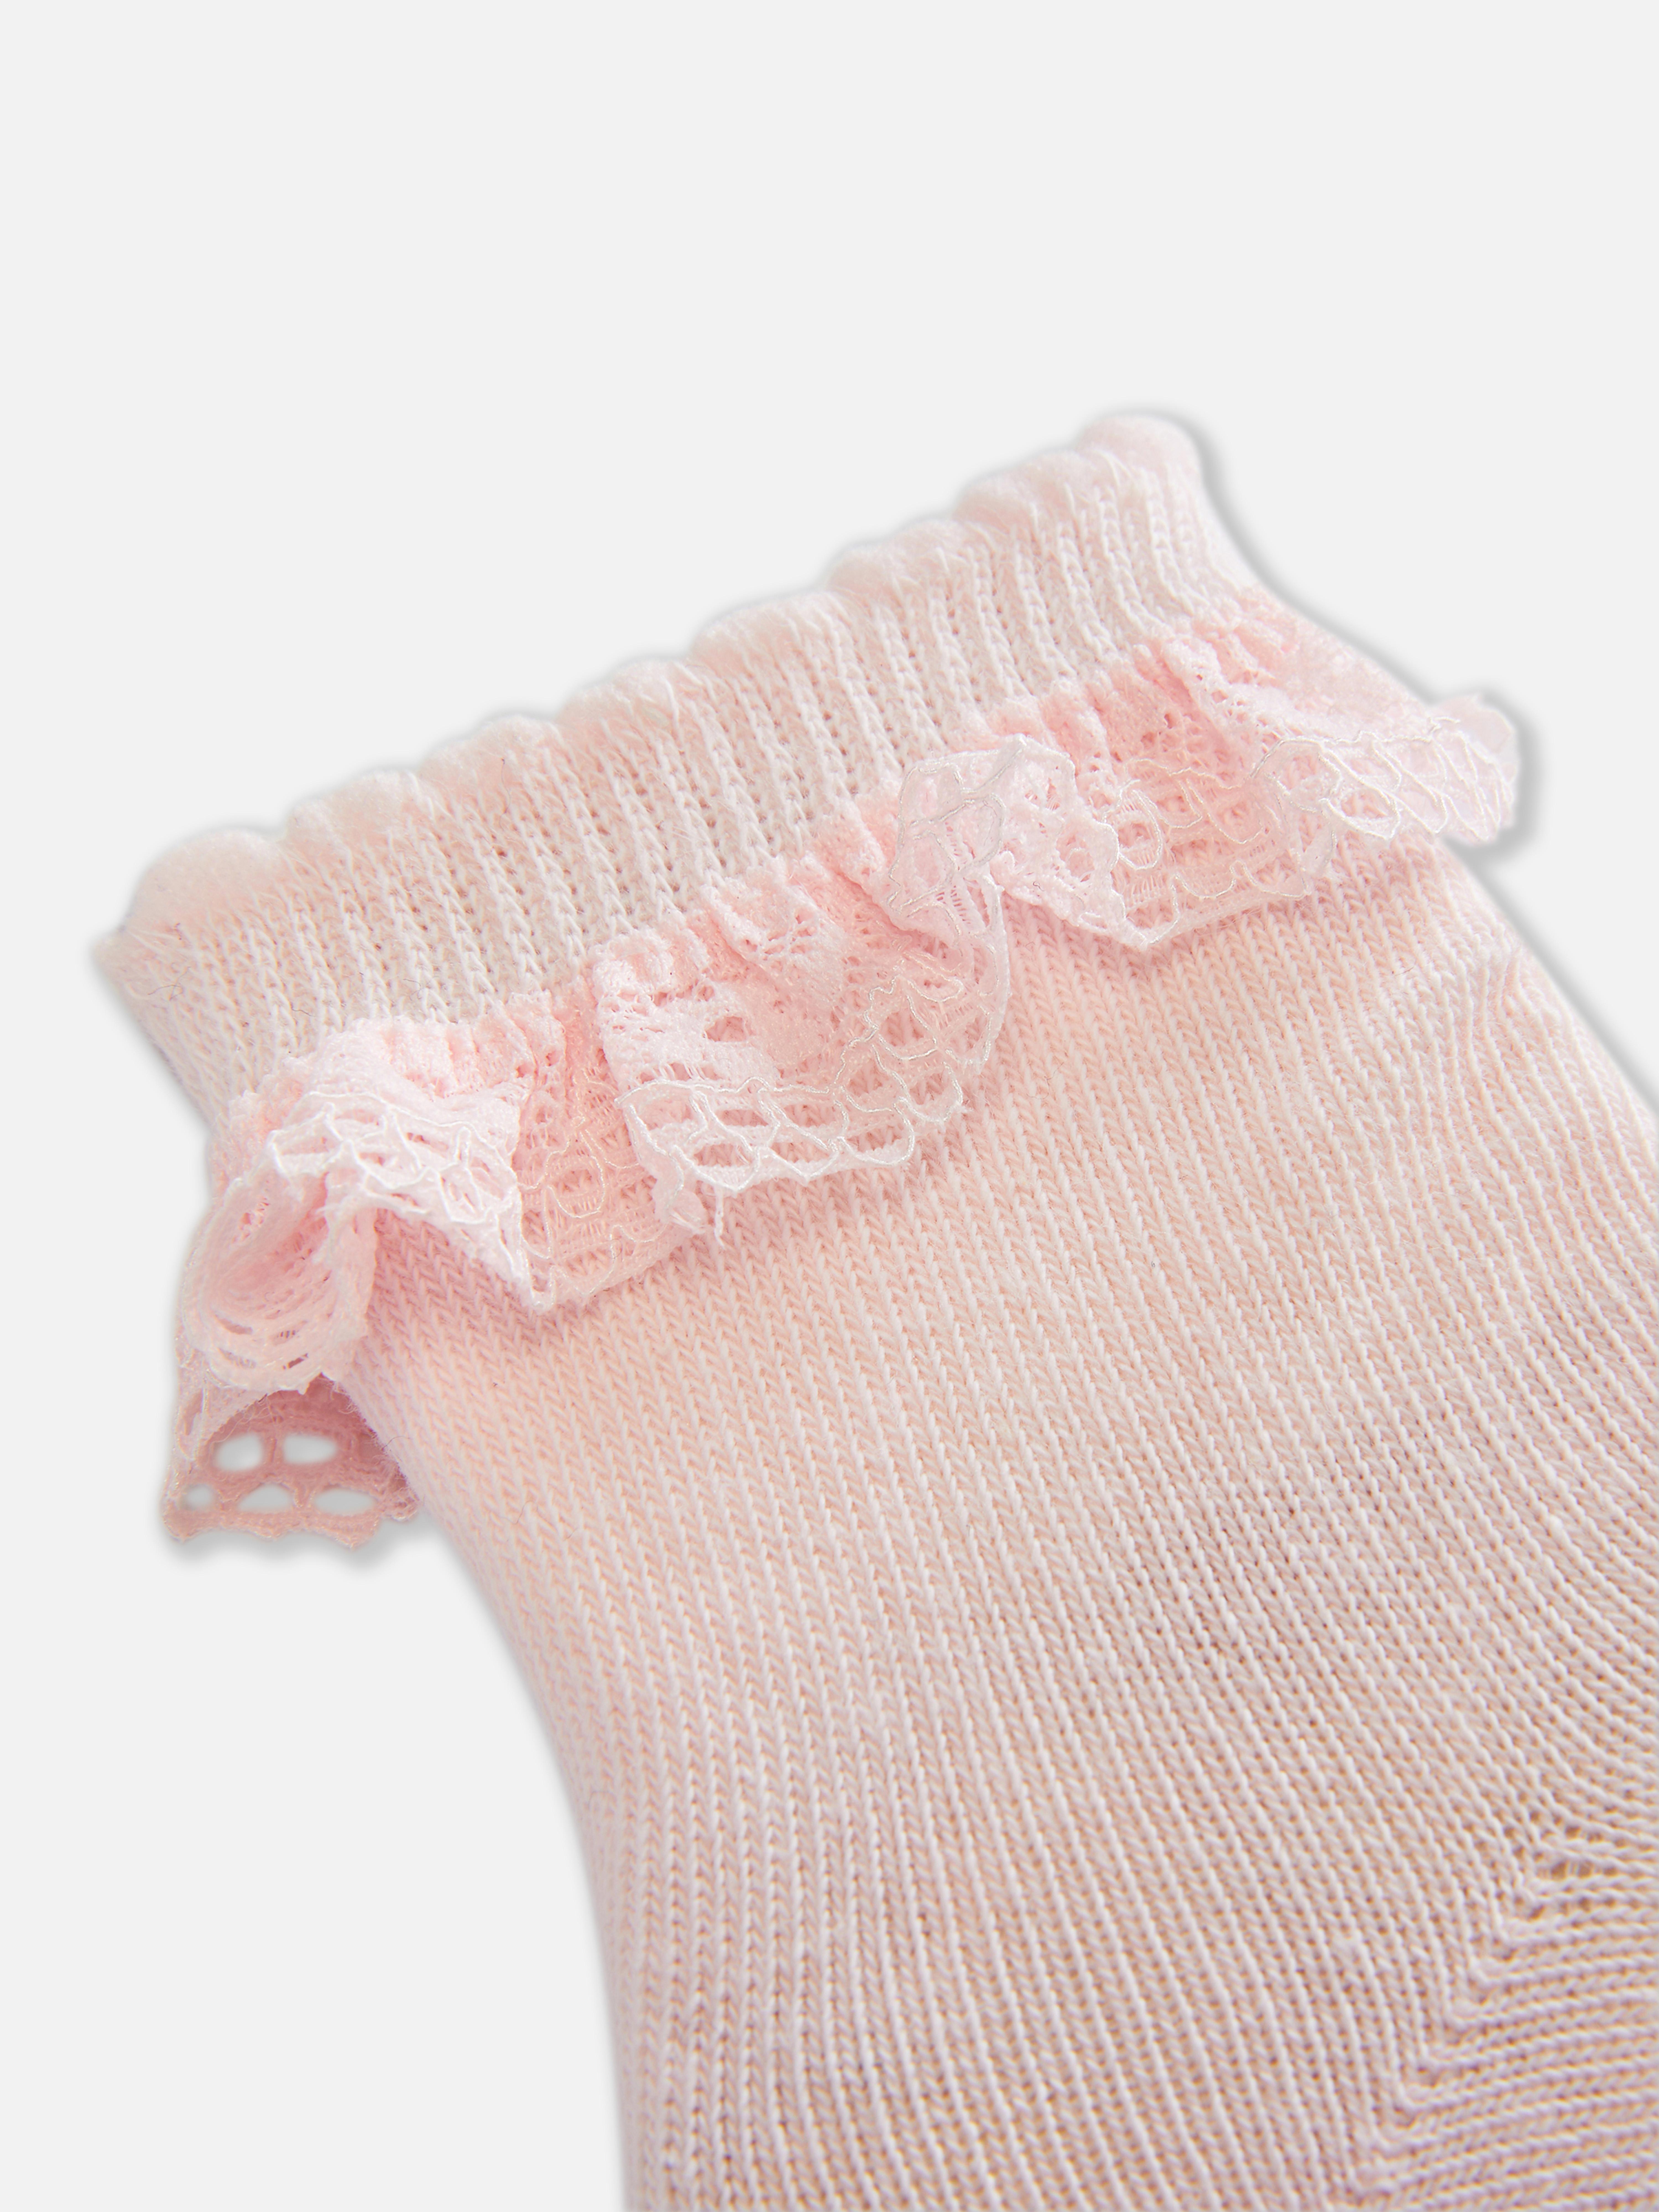 Lace Top Cotton Sock Set